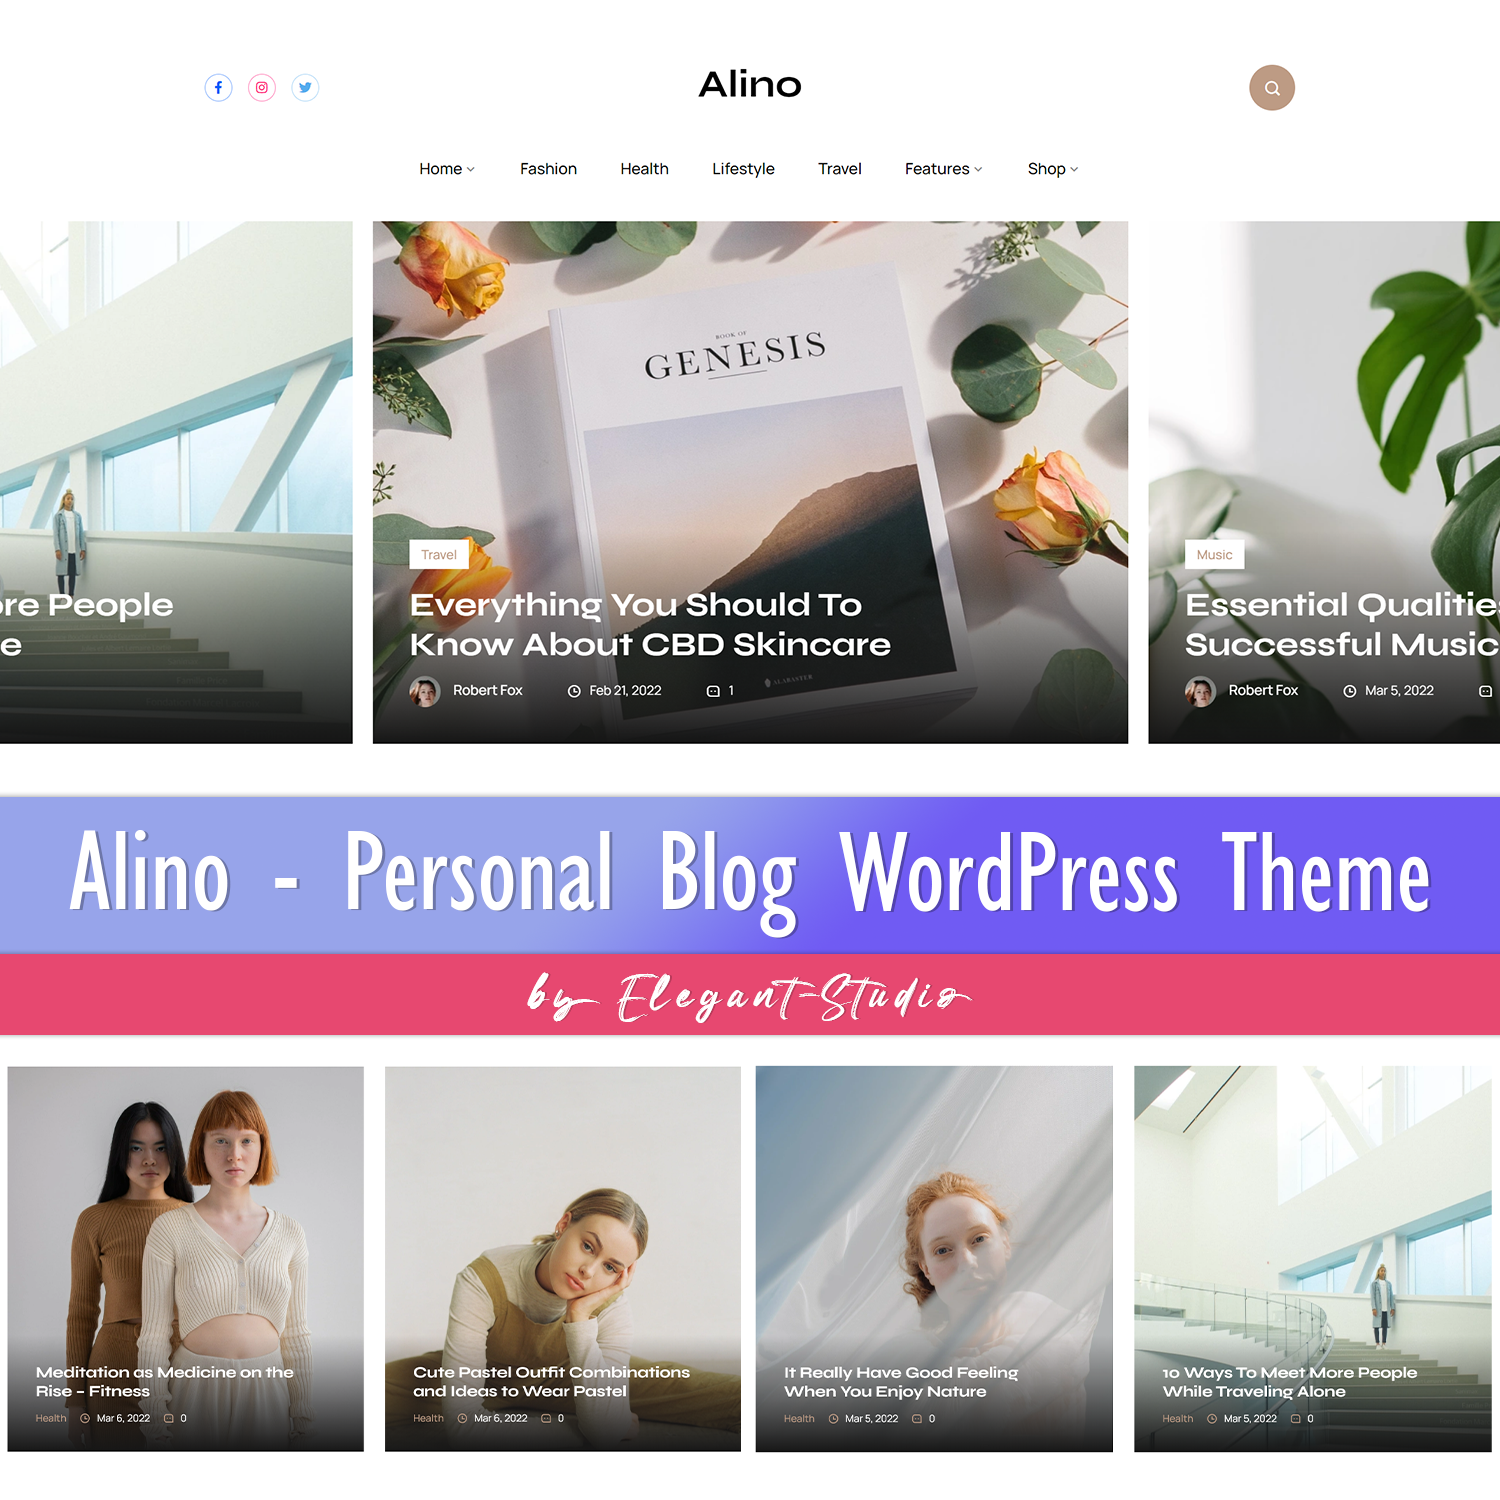 Preview alino personal blog wordpress theme.